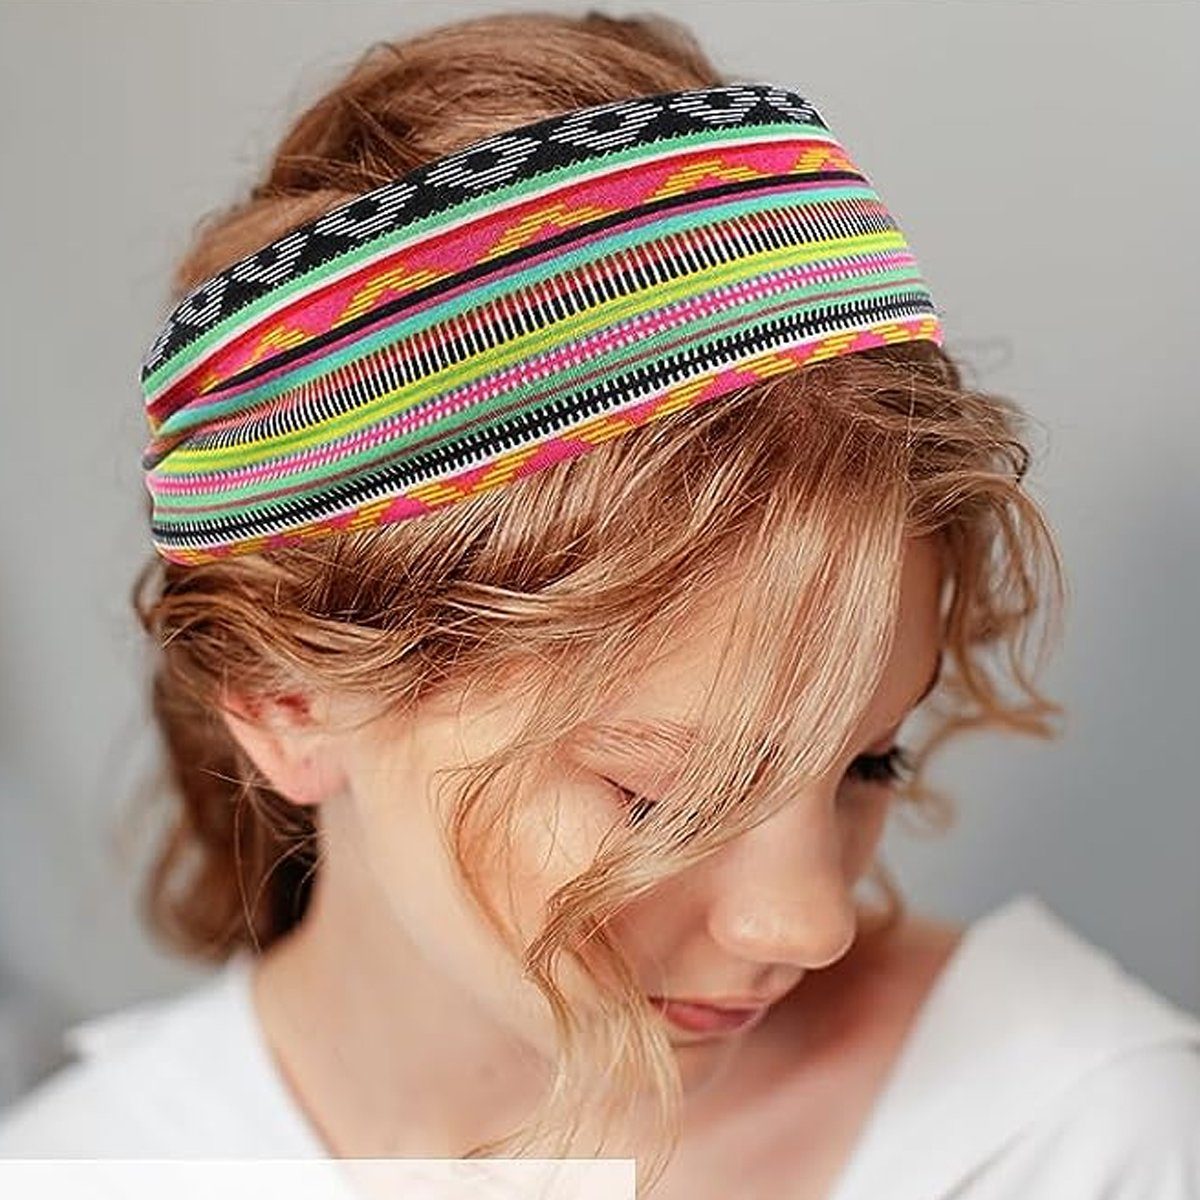 Jormftte Haarband Haarbänder Yoga für + Haarband Elastische Weiche hellbraun + Breite Damen armeegrün Pulver graues Regenbogenstreifen Sport 